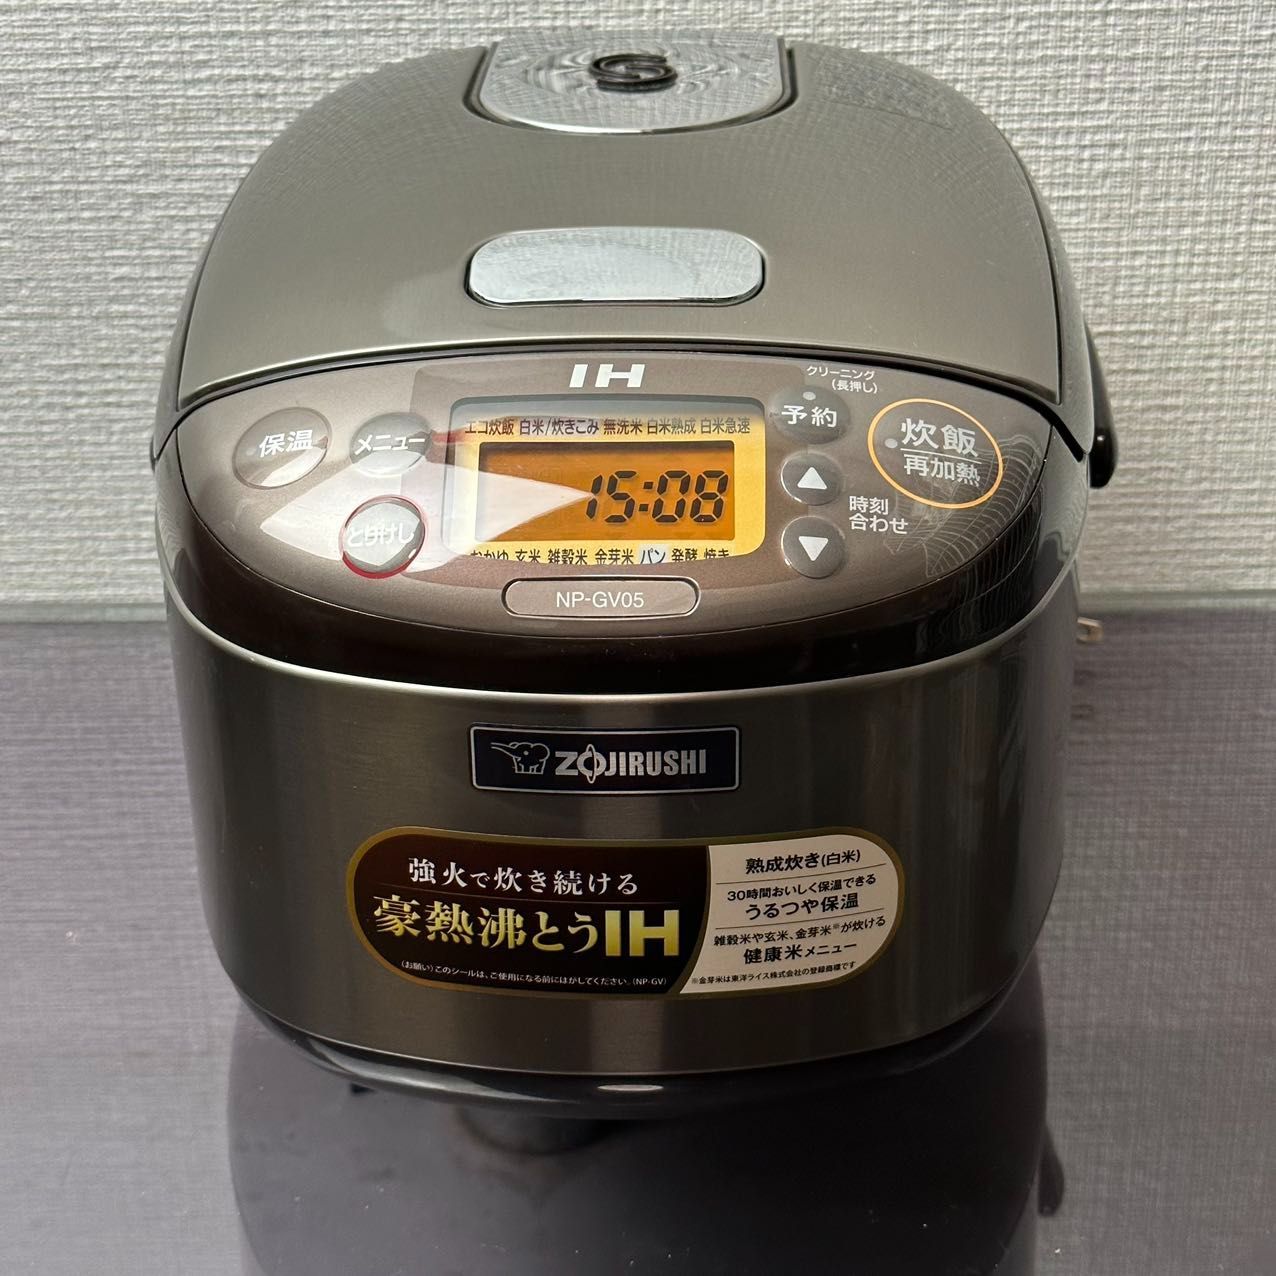 ZOJIRUSHI 象印 IH炊飯ジャー [3合] 極め炊き ステンレスブラウン NP-GK05(XT) - 2